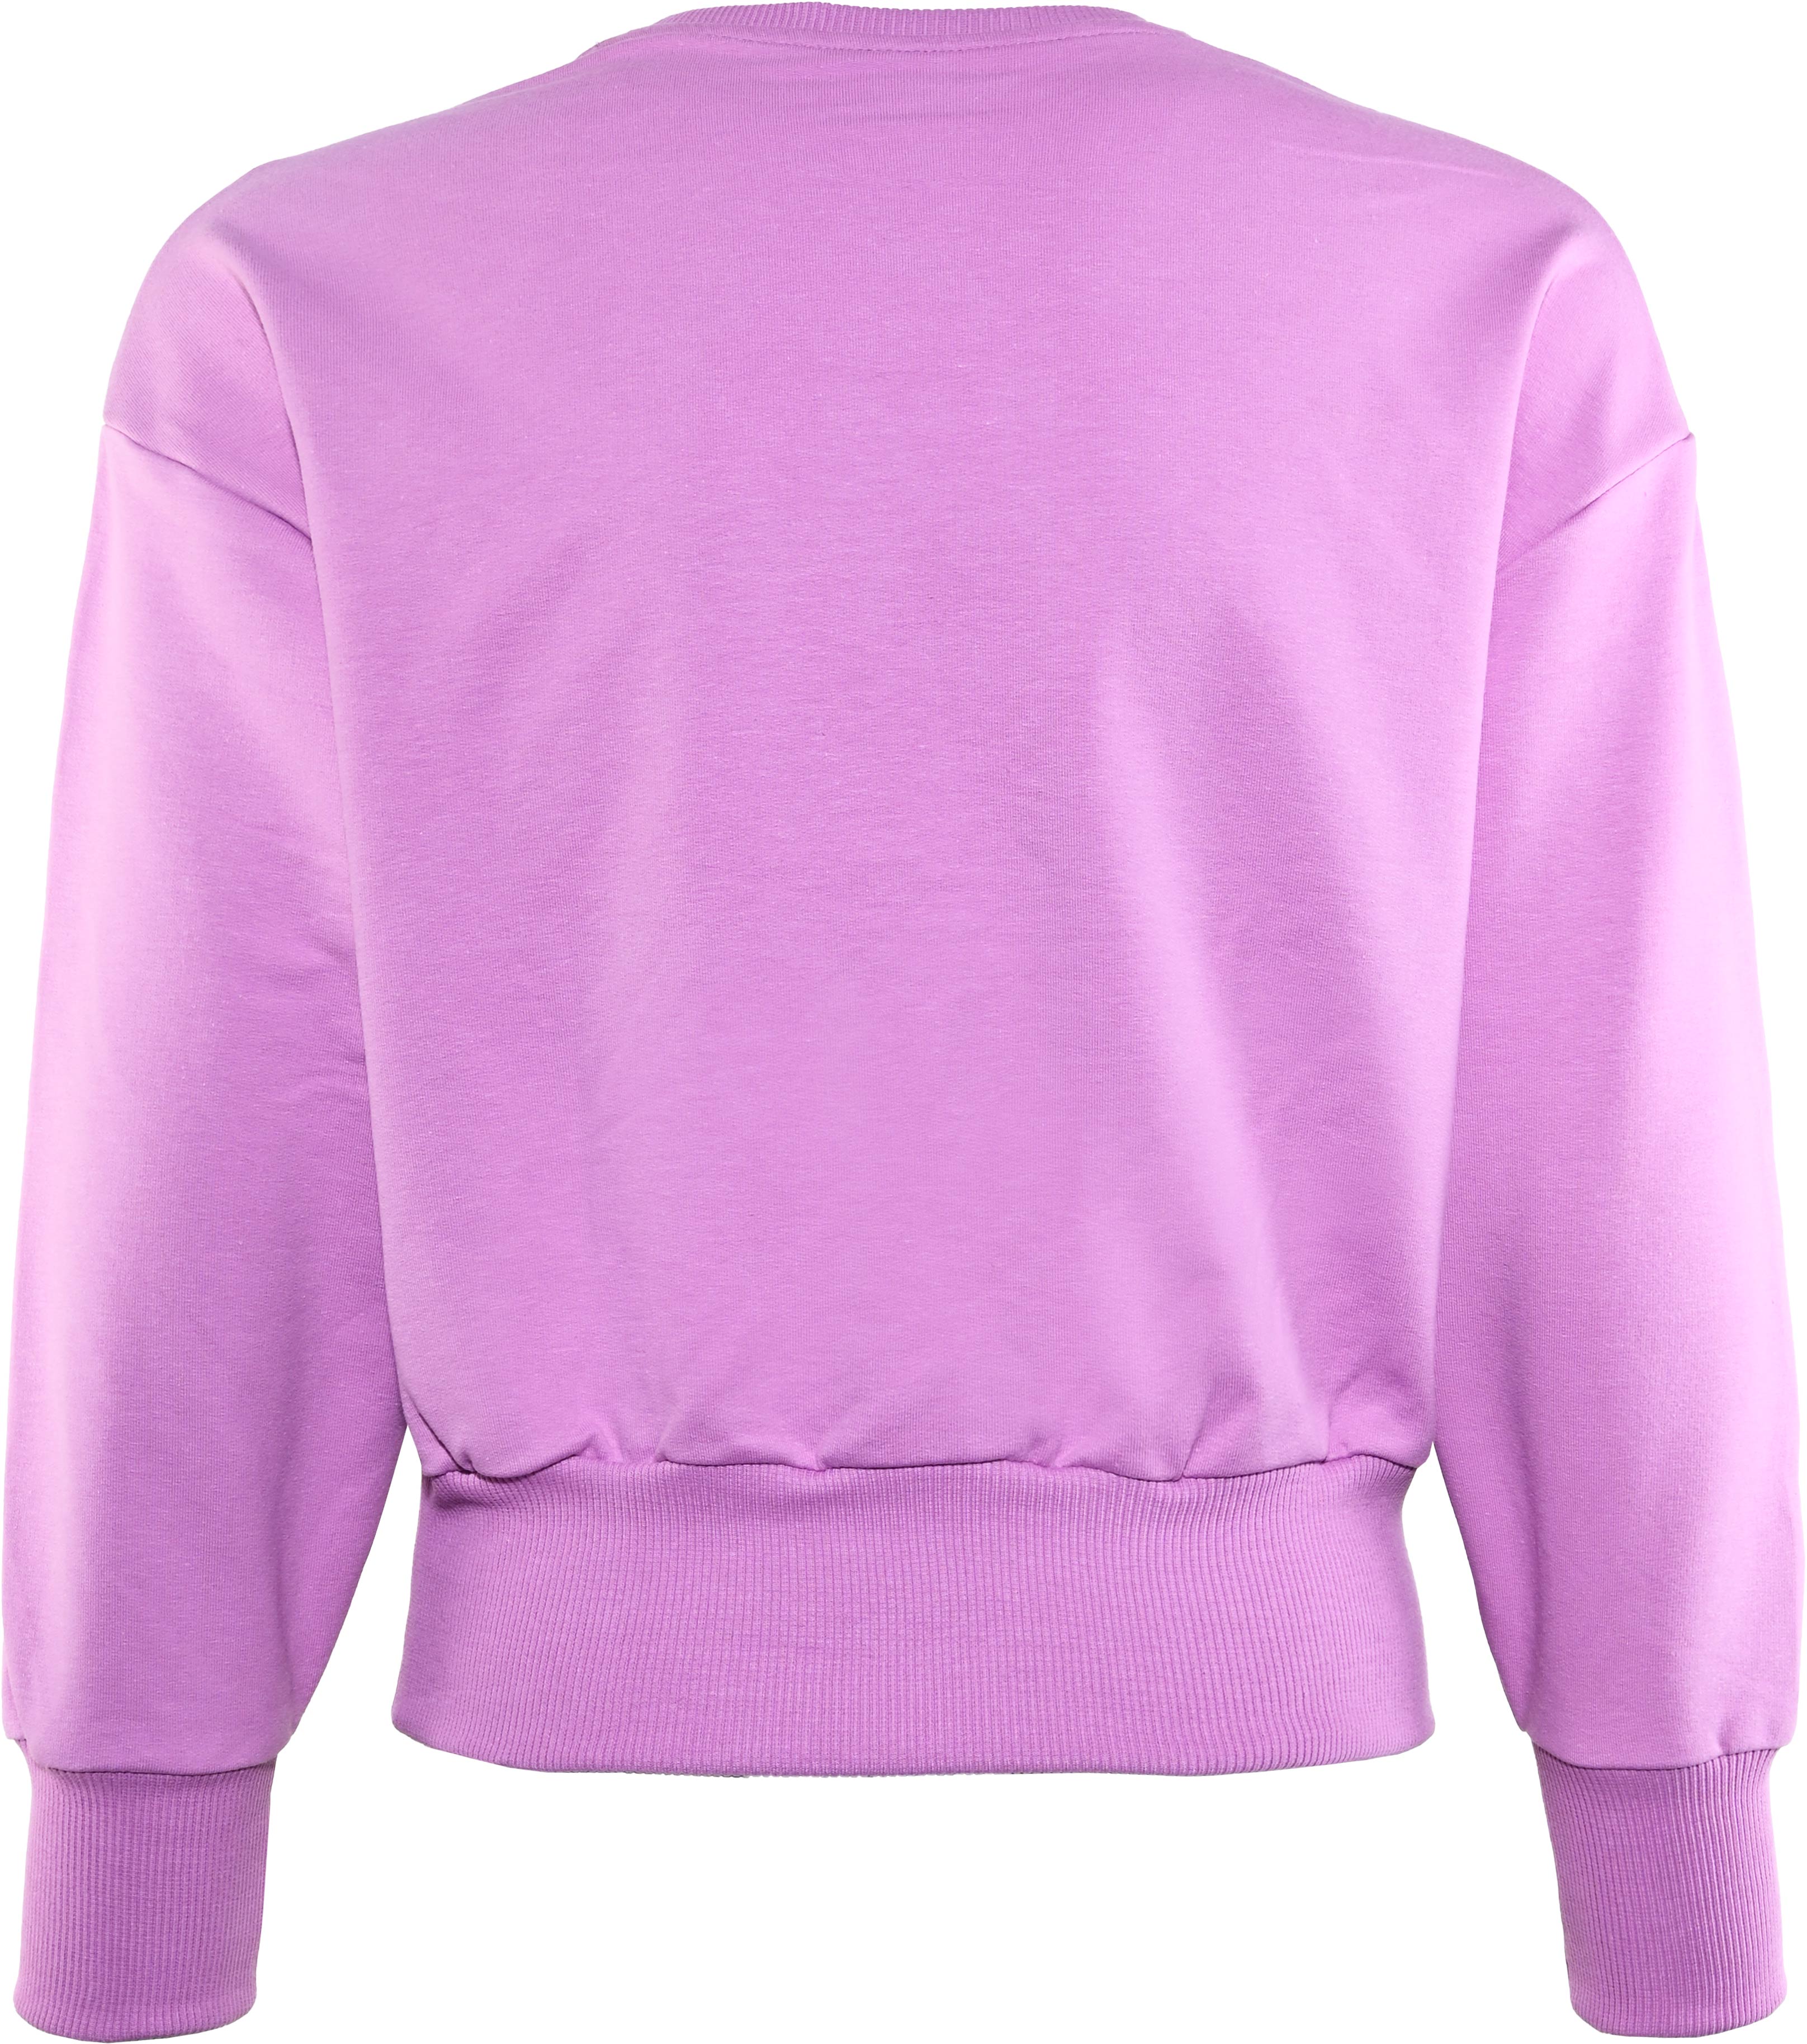 5898-Girls Sweatshirt -Fancy